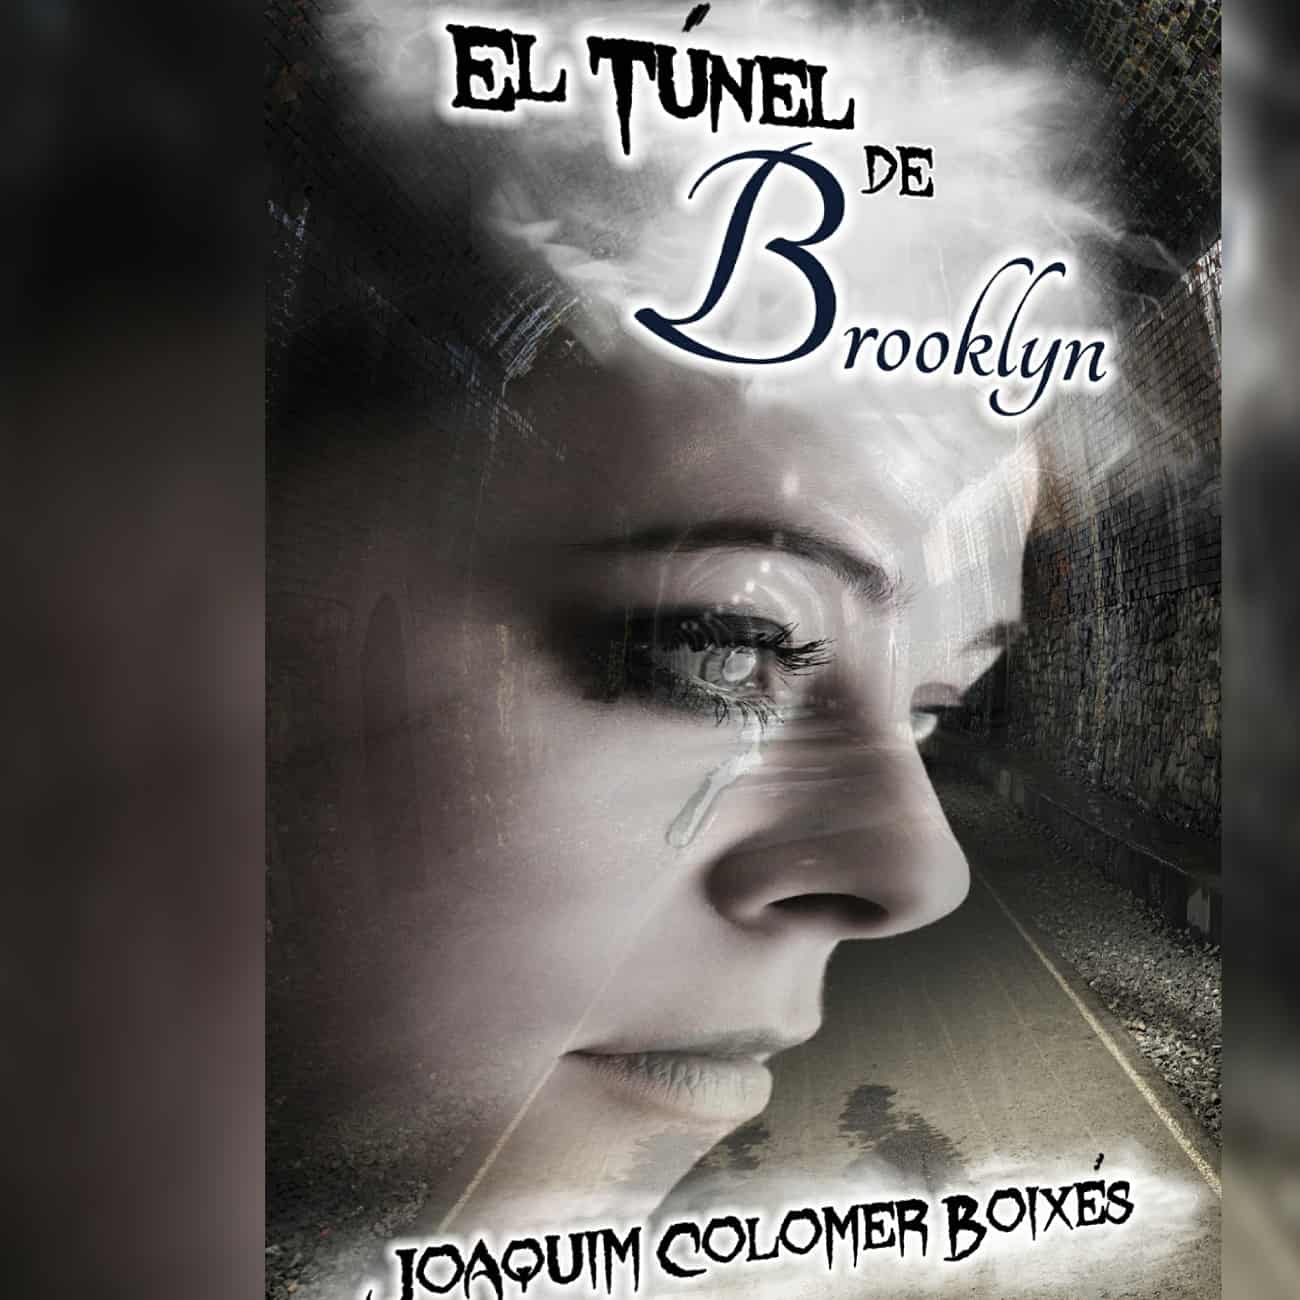 EL TÚNEL DE BROOKLYN, de Joaquim Colomer Boixes